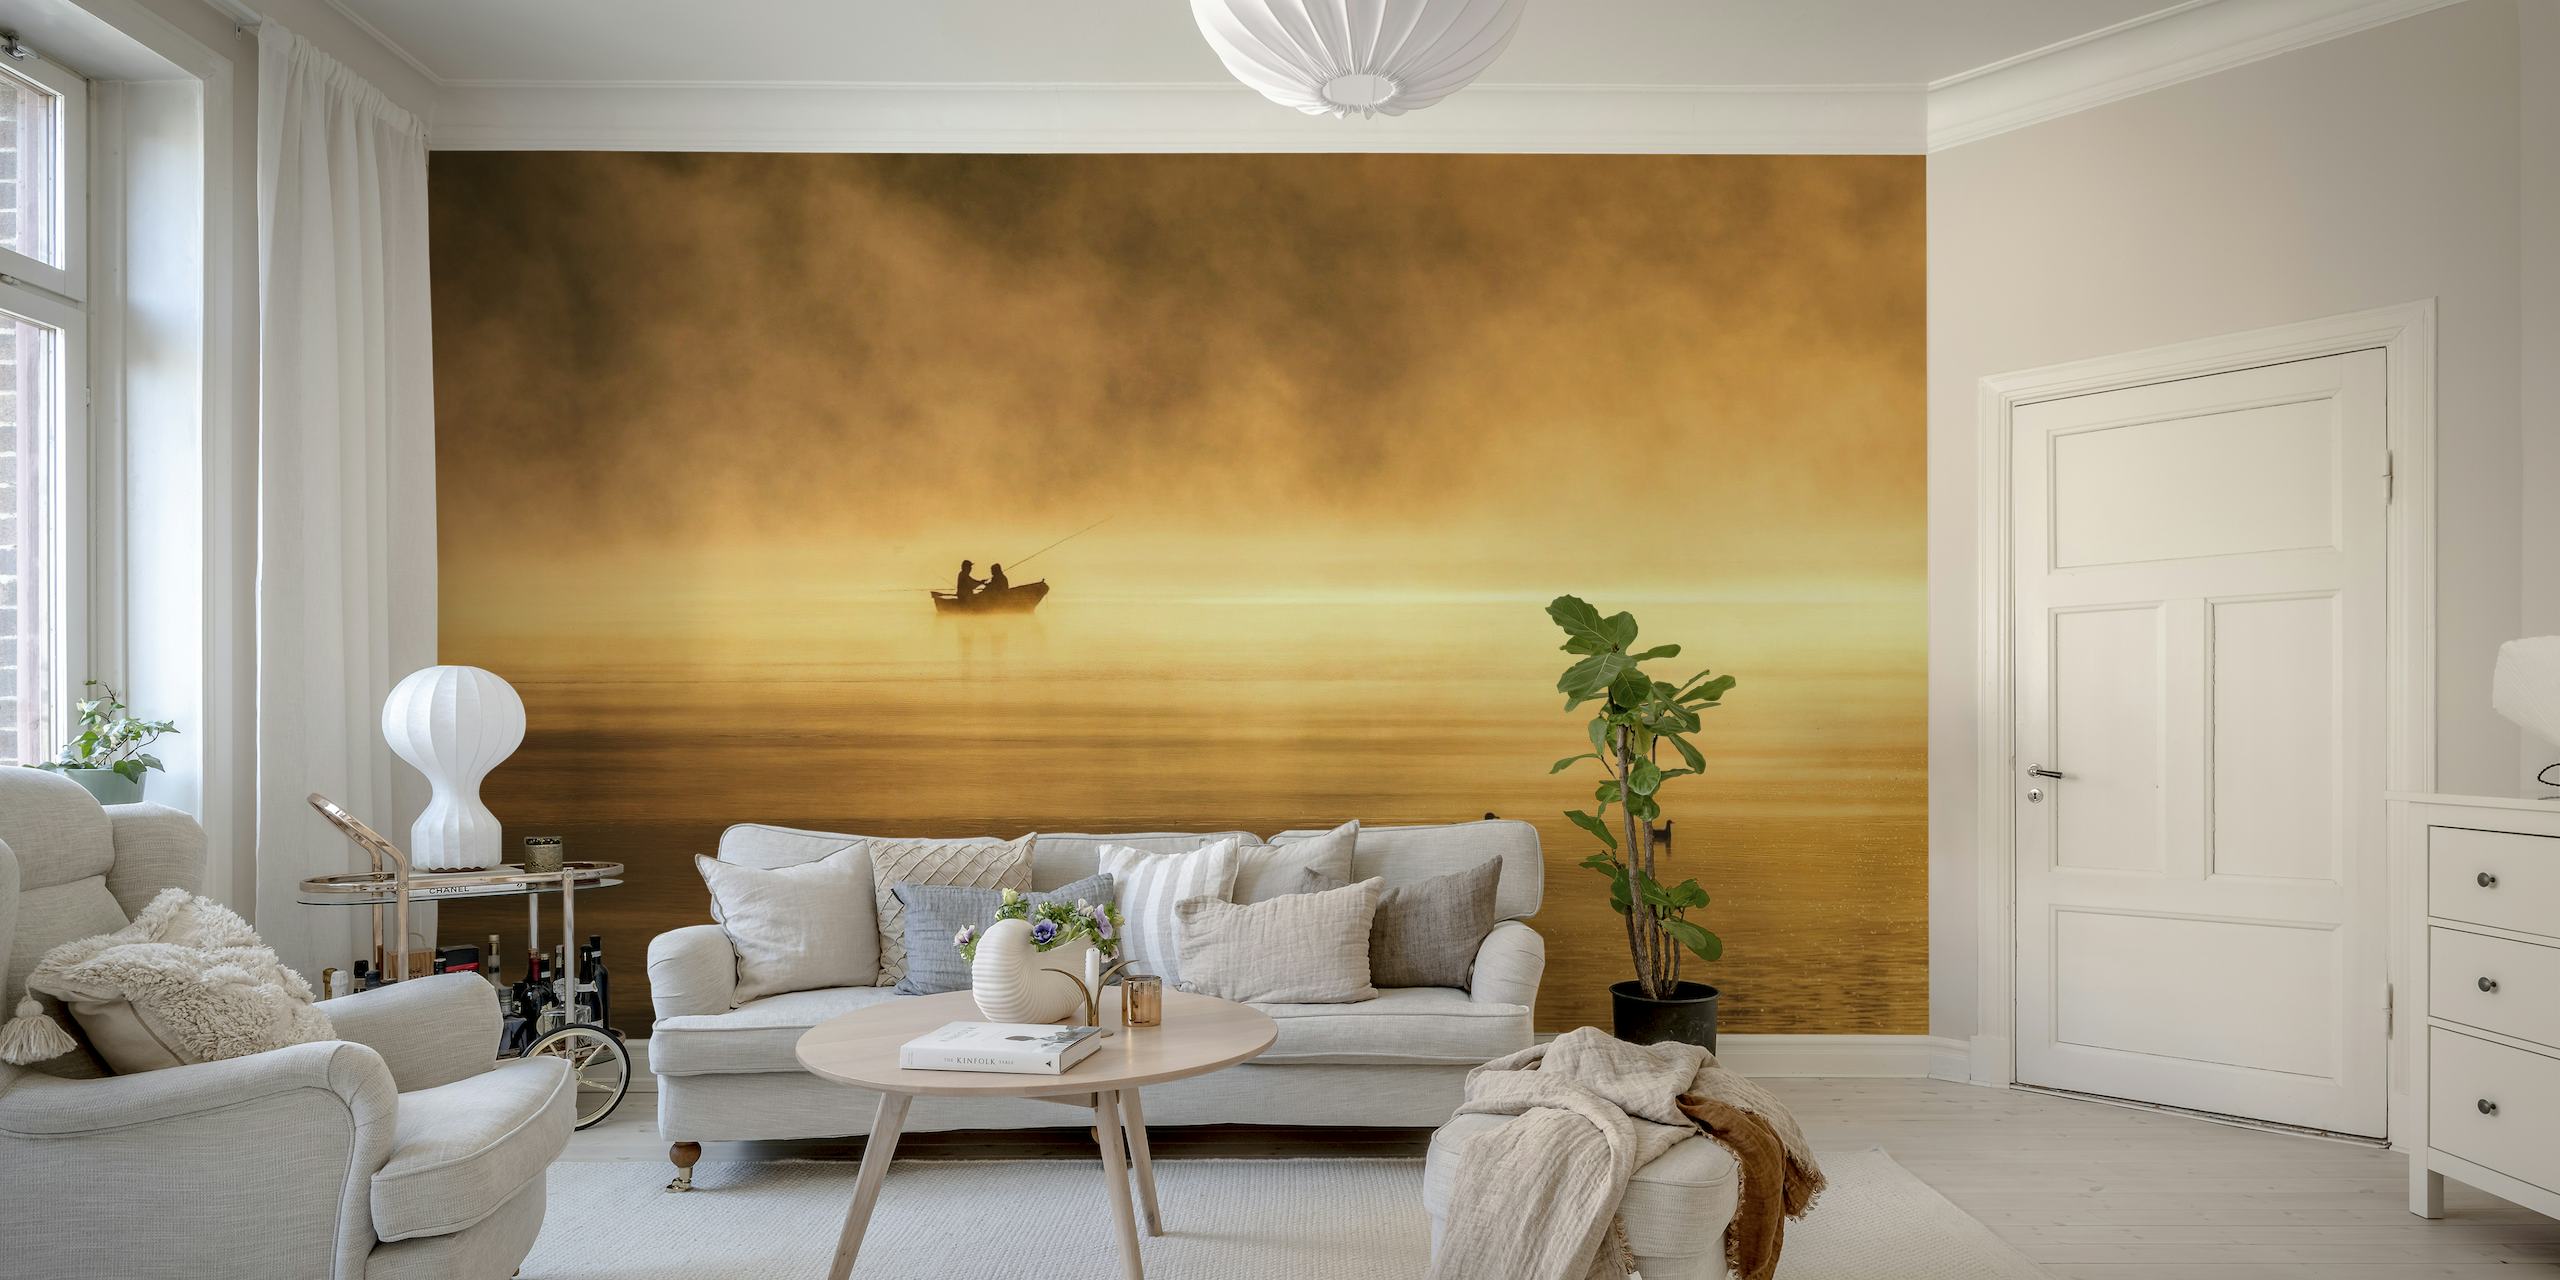 Poklidná scéna rybářské lodi na zamlženém jezeře při východu slunce v nástěnné malbě „Fishing for Glory“.